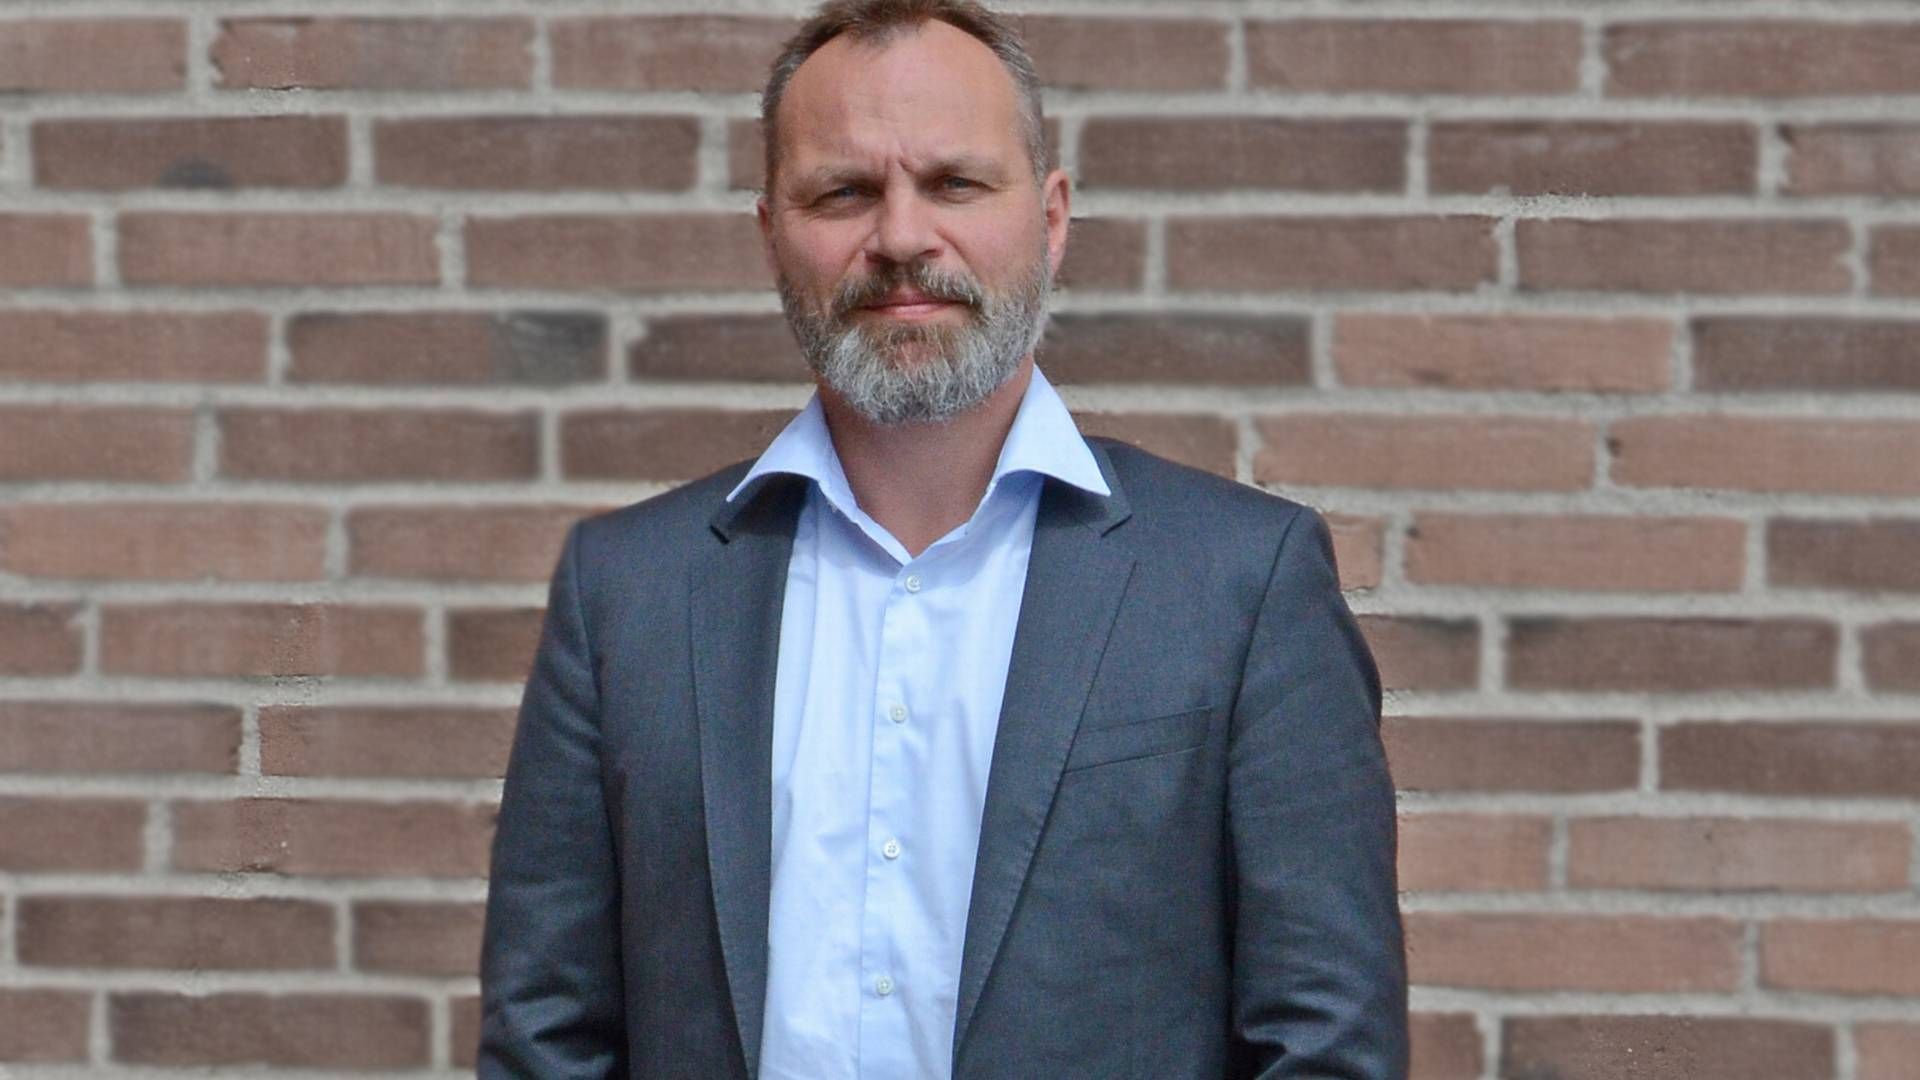 Thomas Bolding Rasmussen glæder sig over købet af Ingeniørværket, der har ifølge direktøren har samme værdier som god forståelse for købmandskab. | Foto: Norconsult